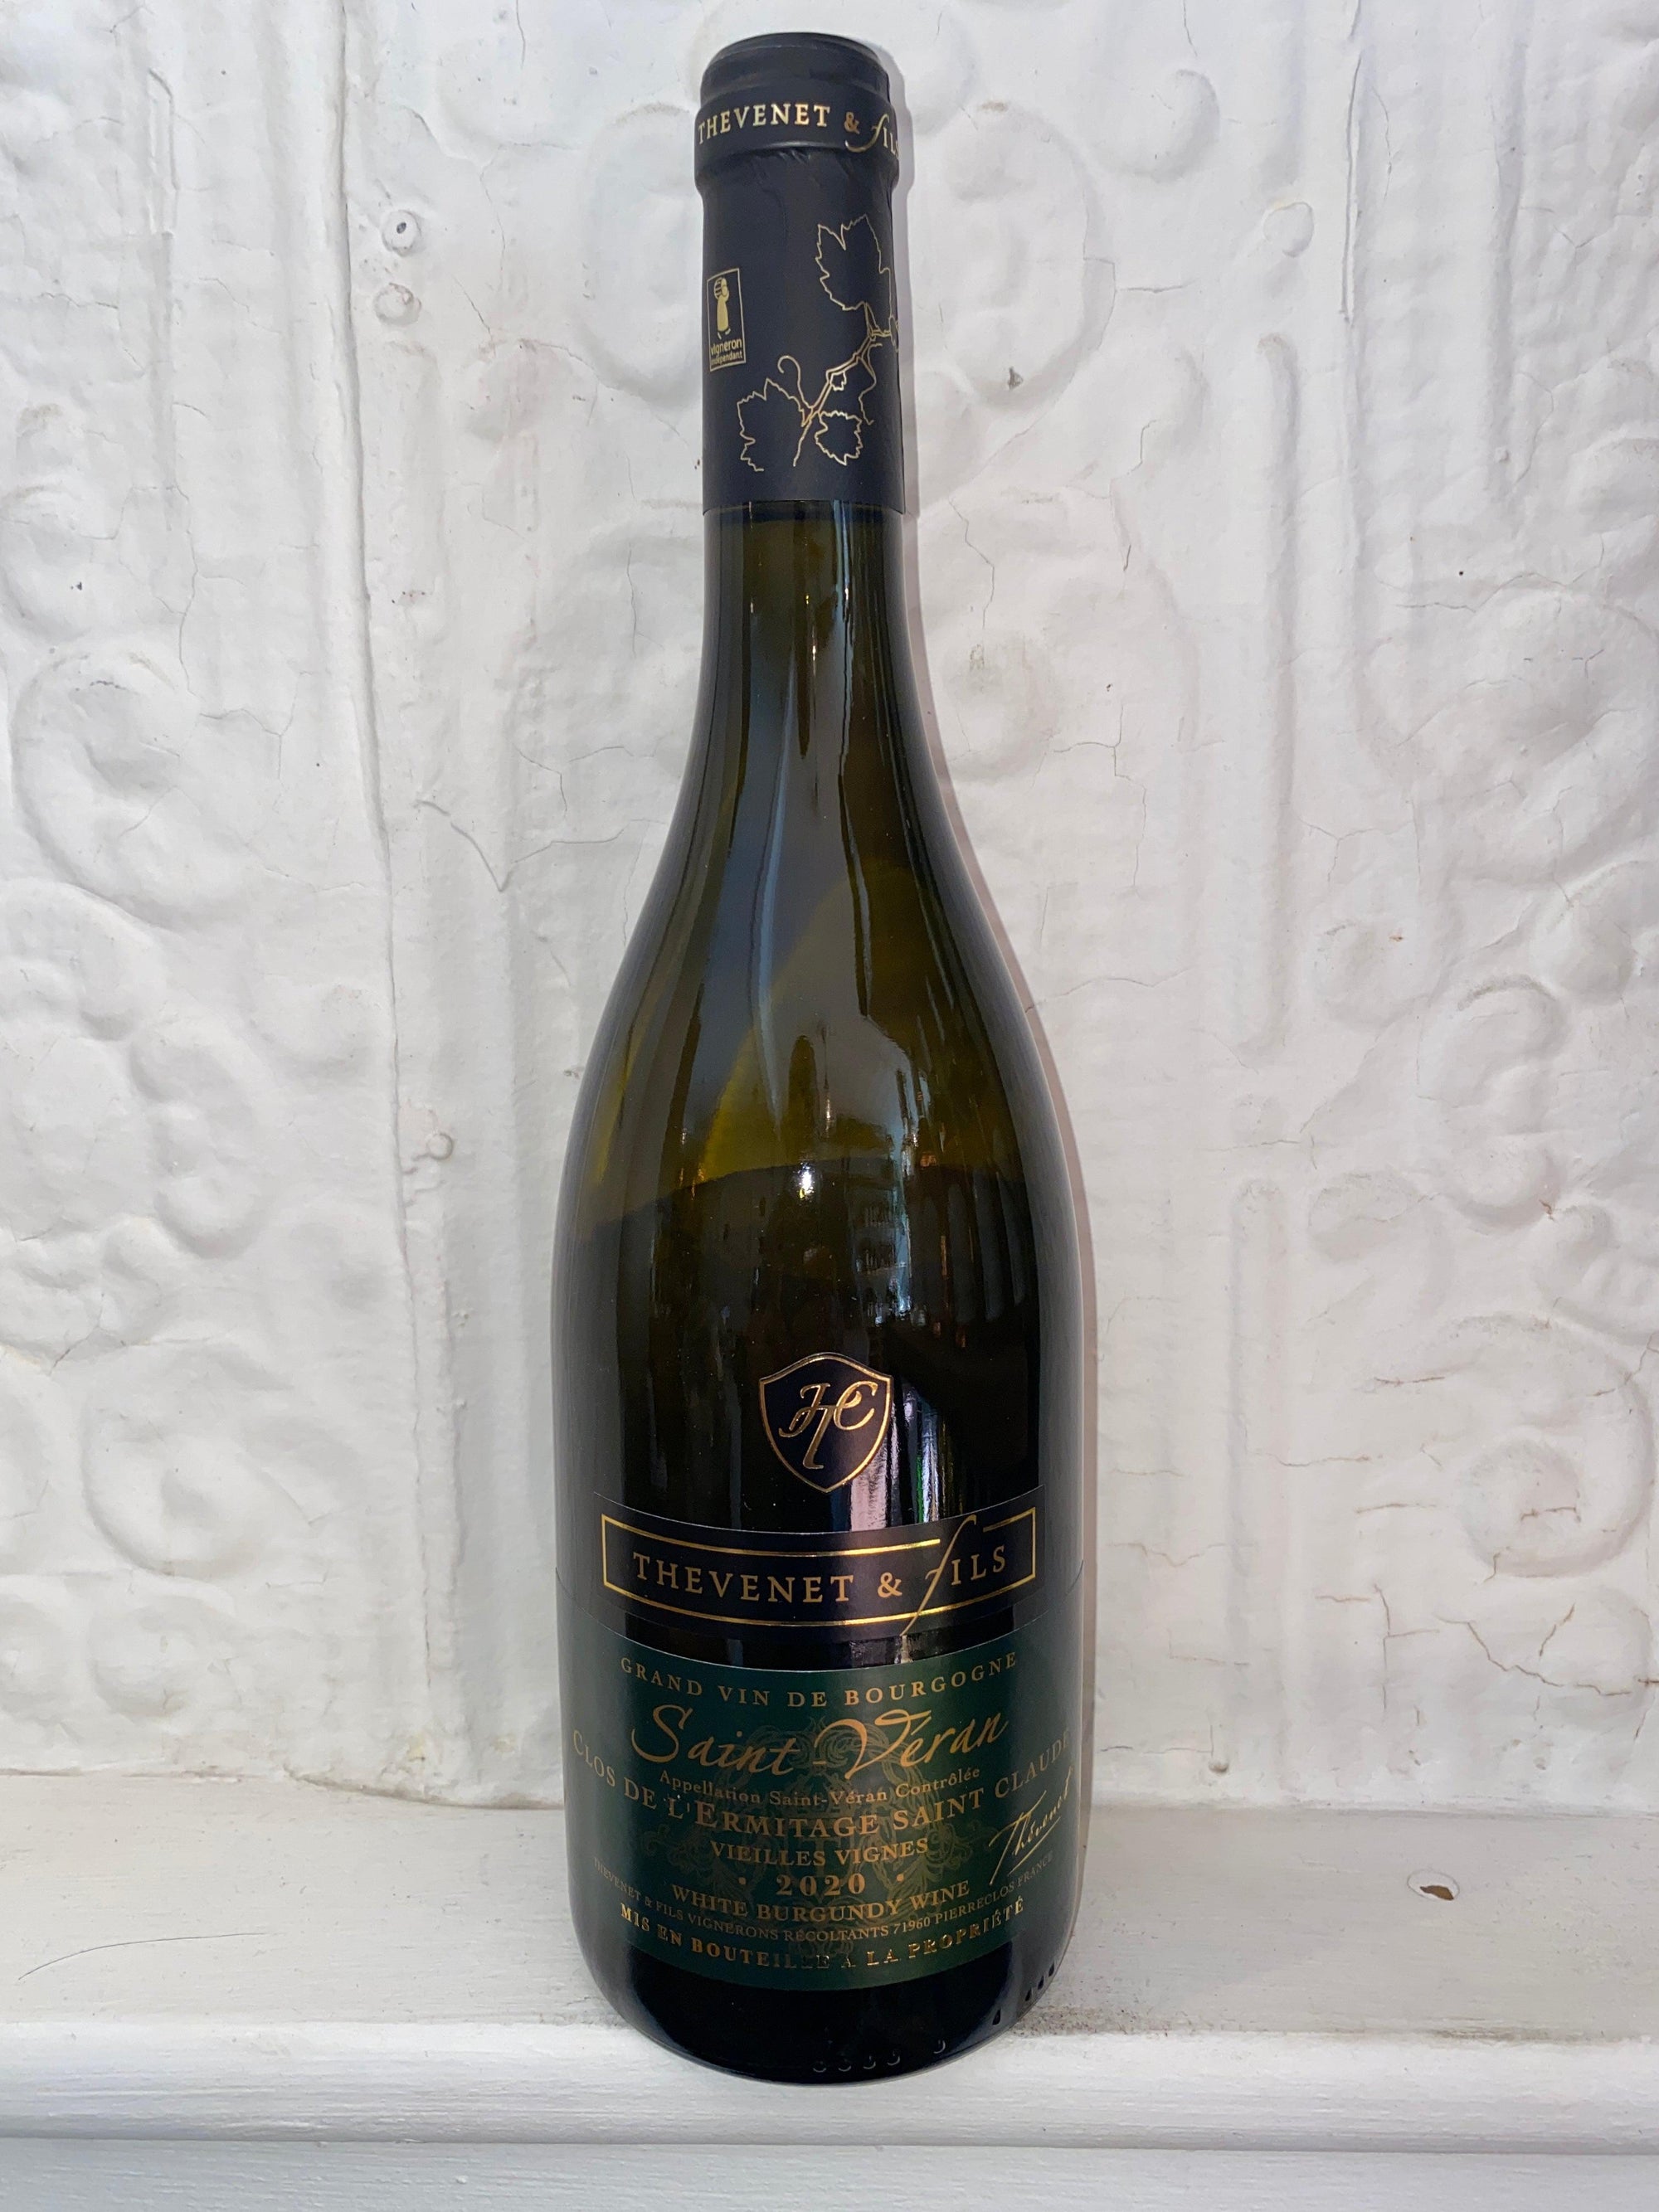 Saint-Veran "Clos de L'Ermitage - Saint Claude Vieilles Vignes", Thevenet et Fils 2020 (Burgundy, France)-Wine-Bibber & Bell